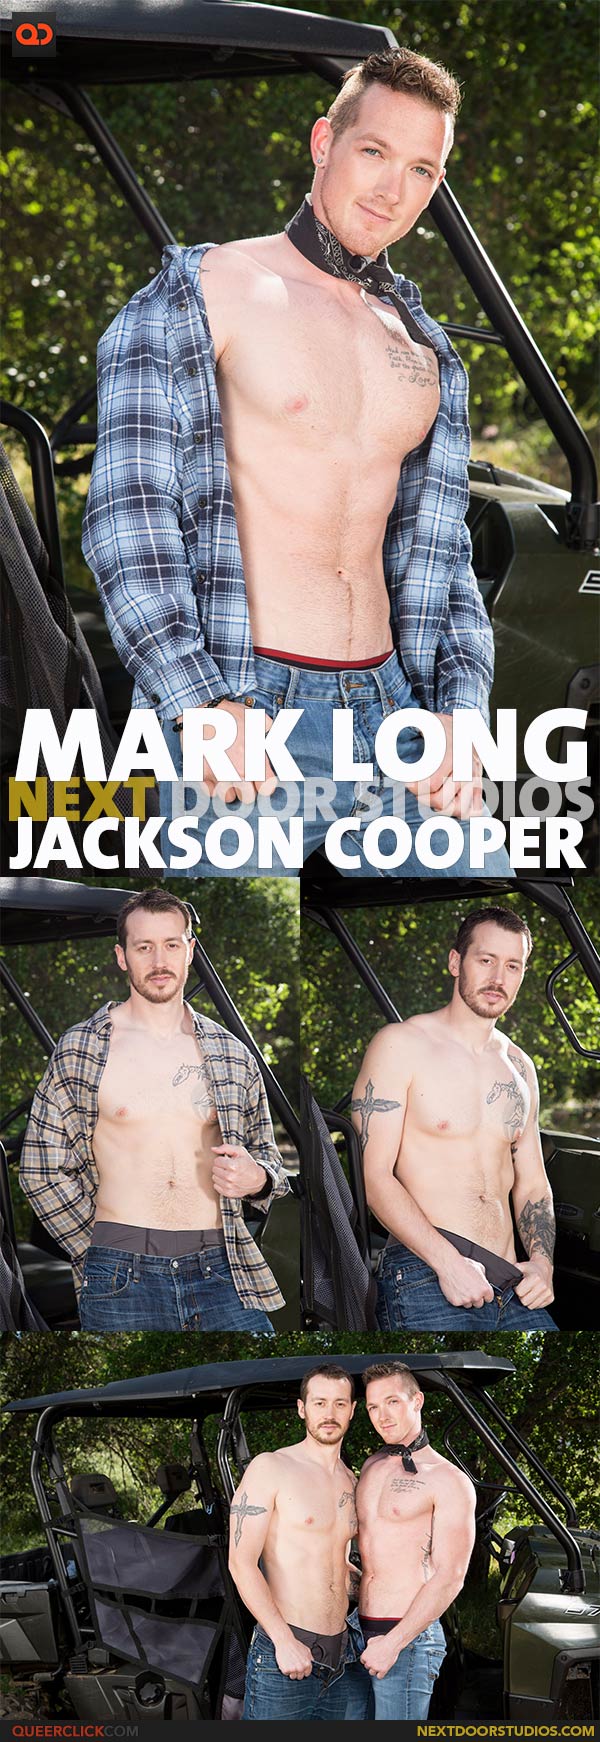 Next Door Studios:  Mark Long and Jackson Cooper